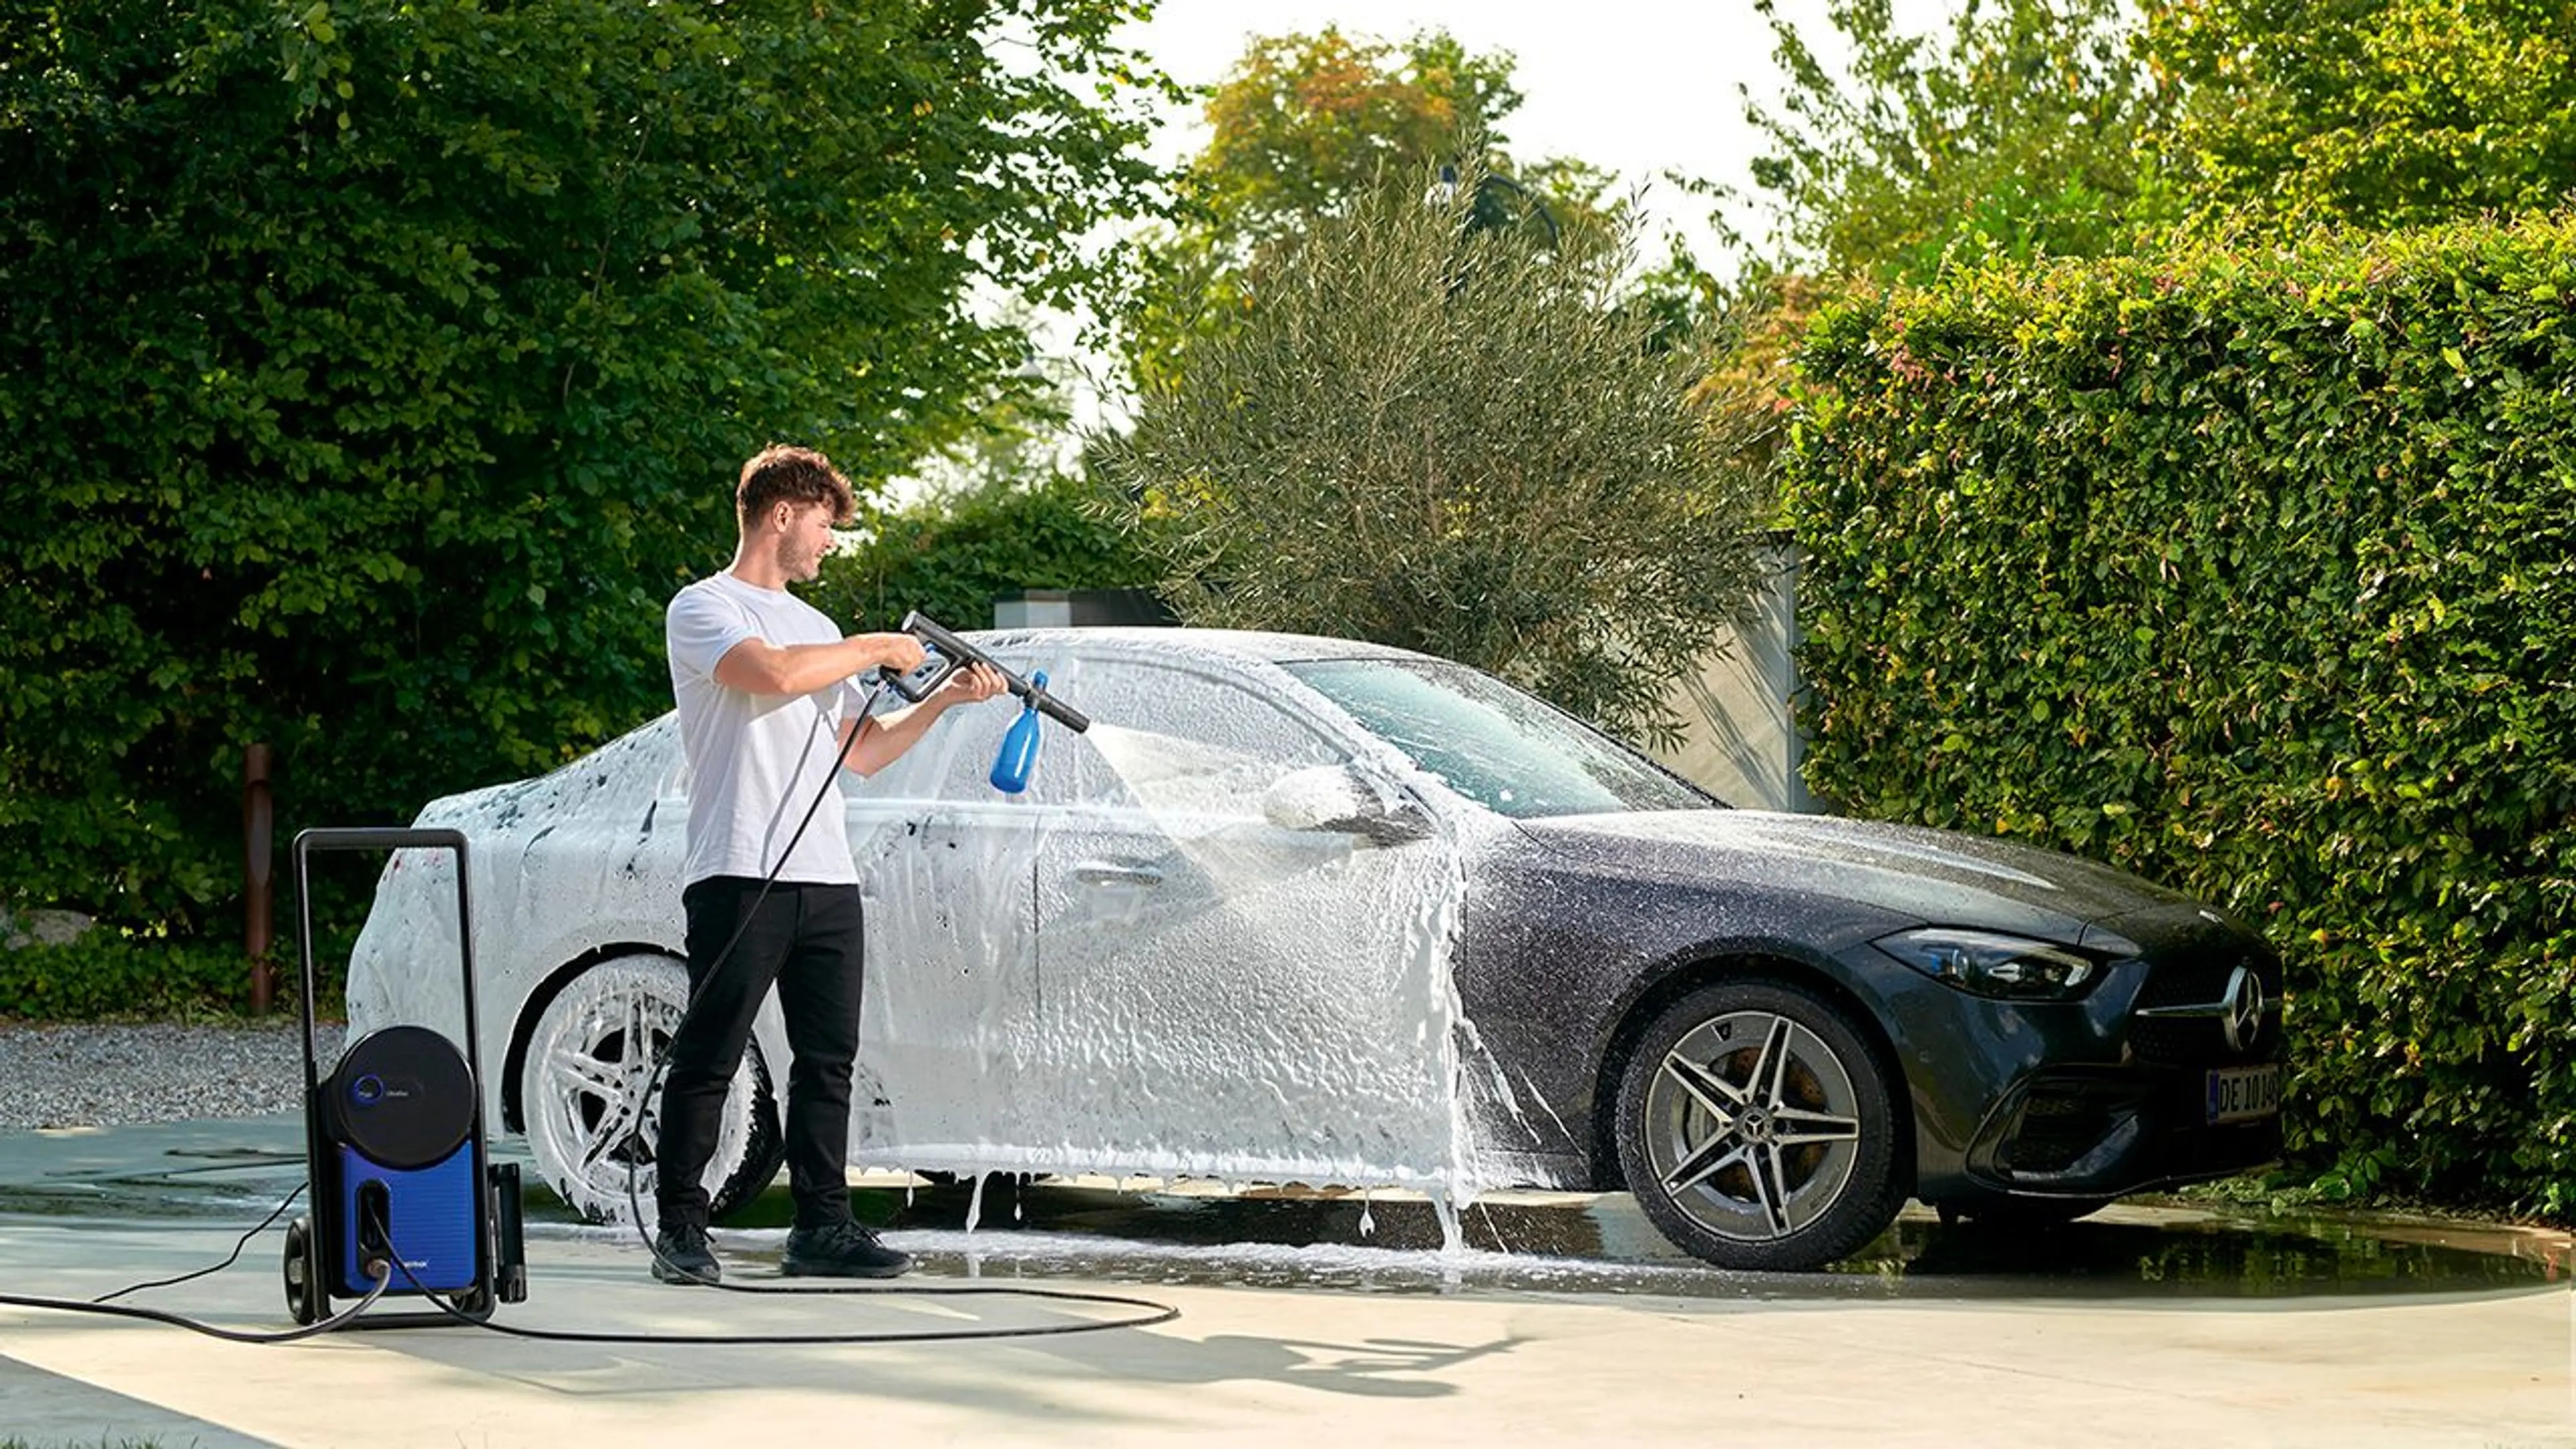 Mann som vasker bilen med høytrykkspyler og skumsprayer.